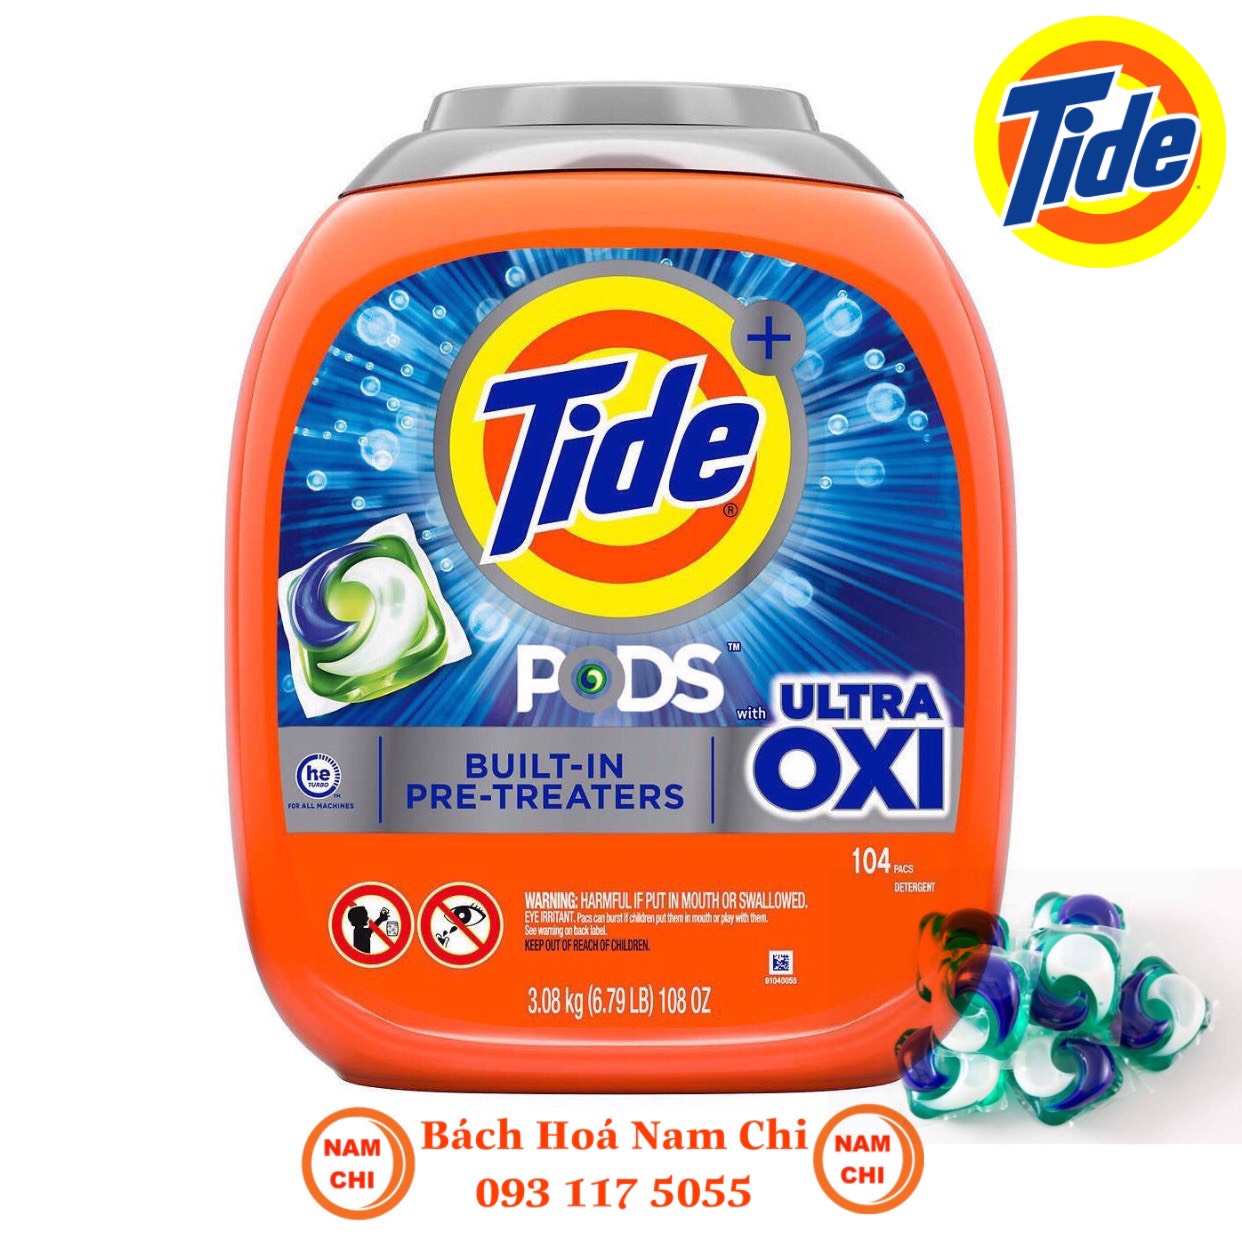 Viên Giặt Tide Pods Ultra Oxi 104v Siêu Sạch Đánh Bật Mọi Vết Bẩn